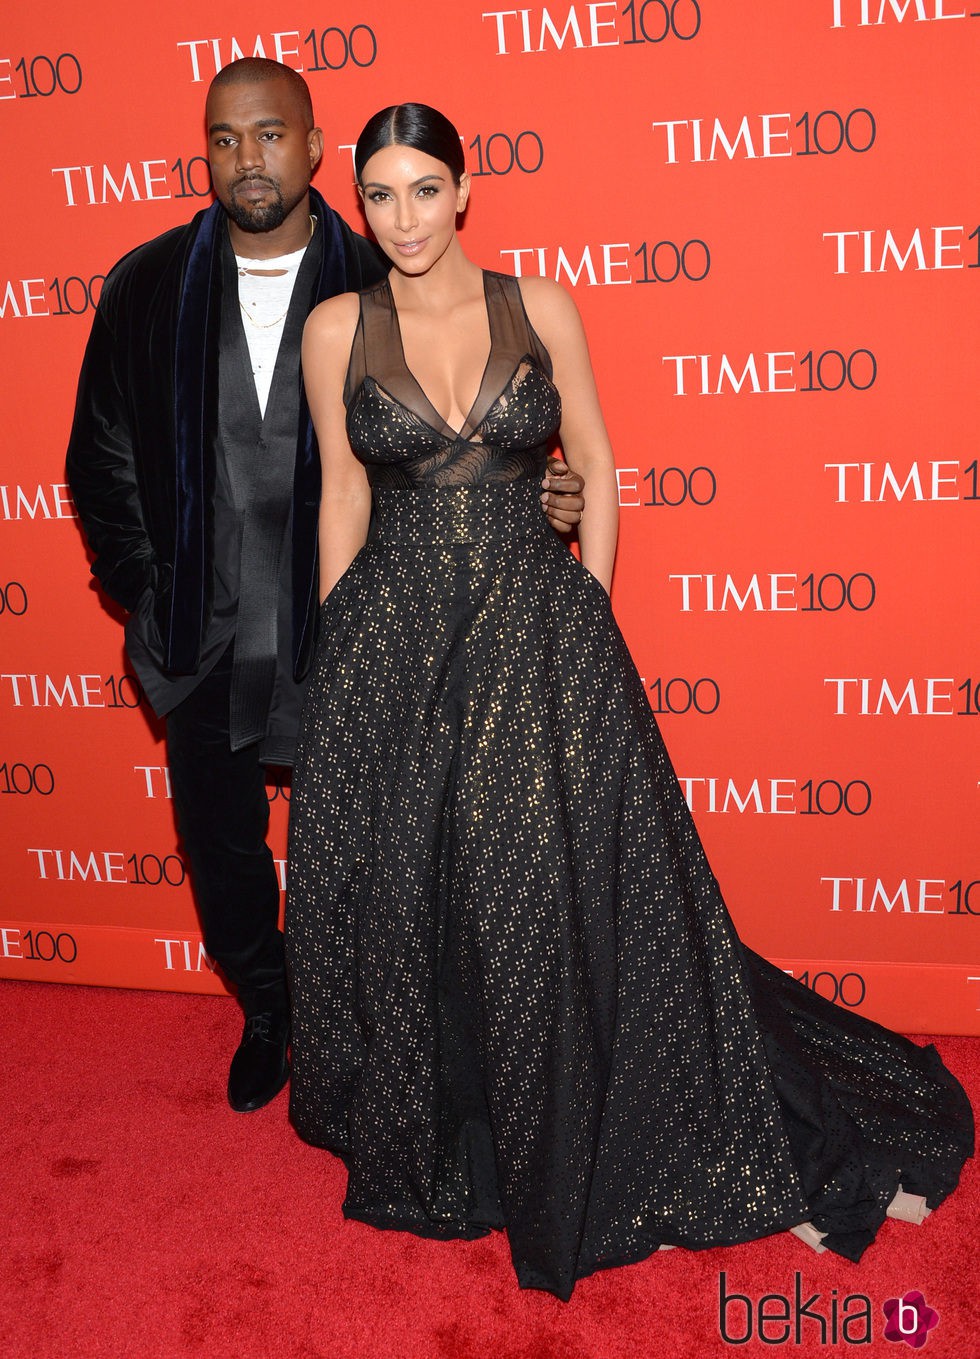 Kim Kardashian y Kanye West en la Gala Time de los 100 más influyentes 2015